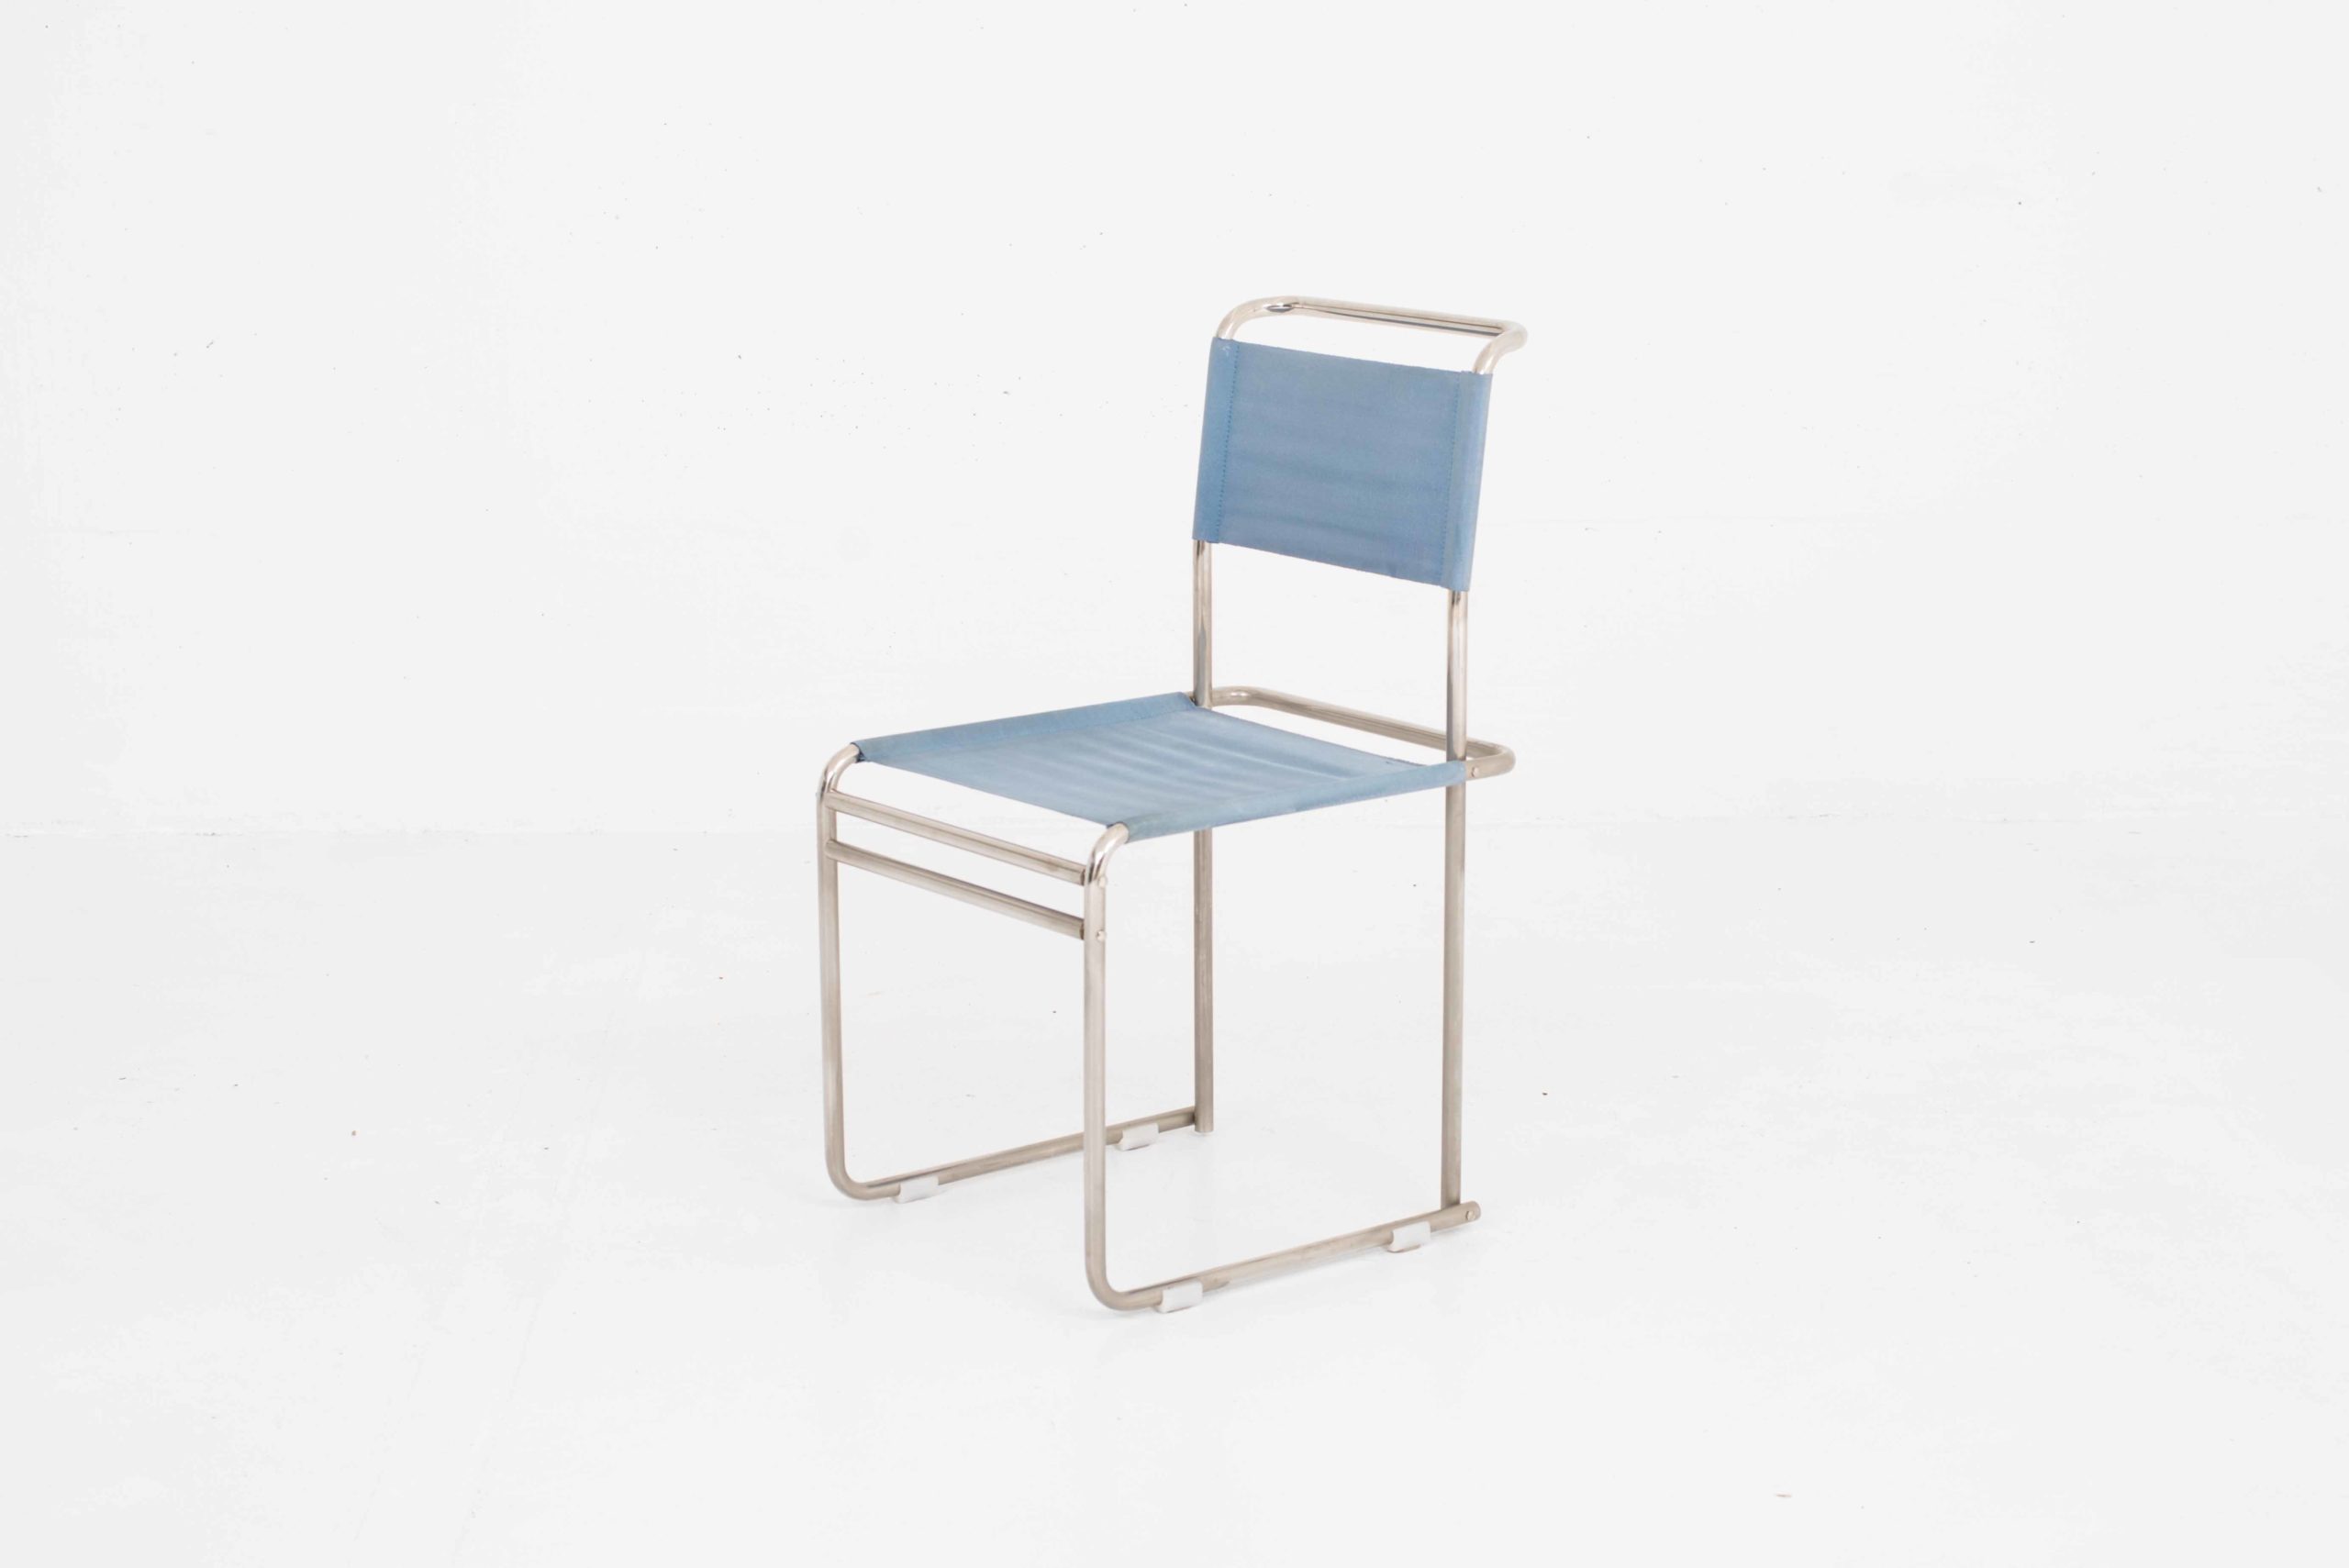 Tecta B40 Stühle von Marcel Breuer, im Achterset-2